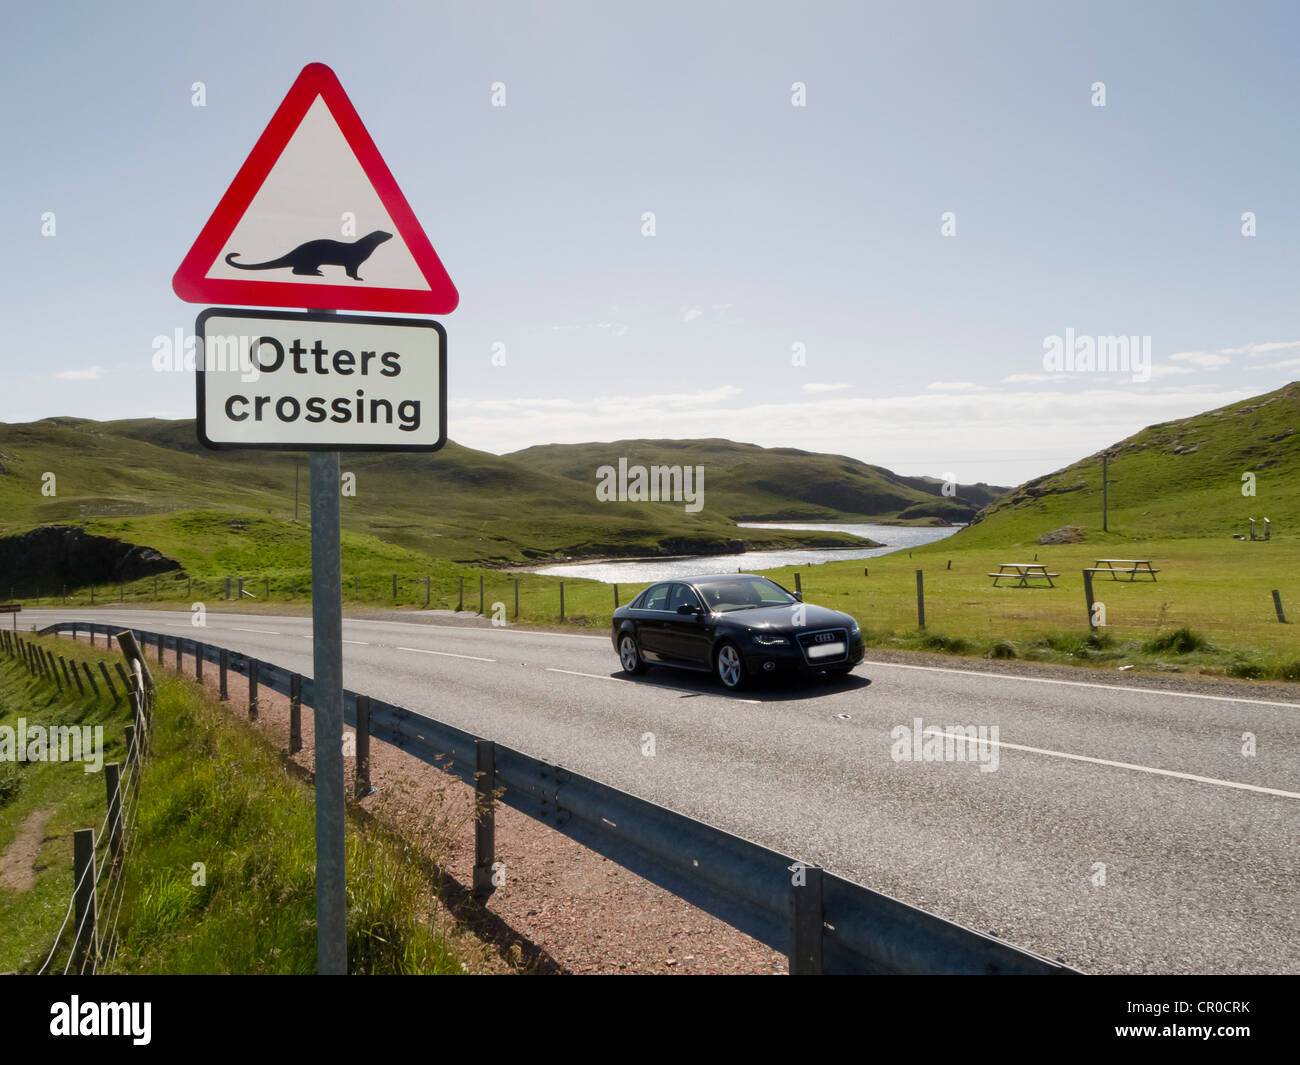 "Lontre crossing' avvertenza cartello stradale a Mavis Grind, Isole Shetland. Giugno 2010. Foto Stock